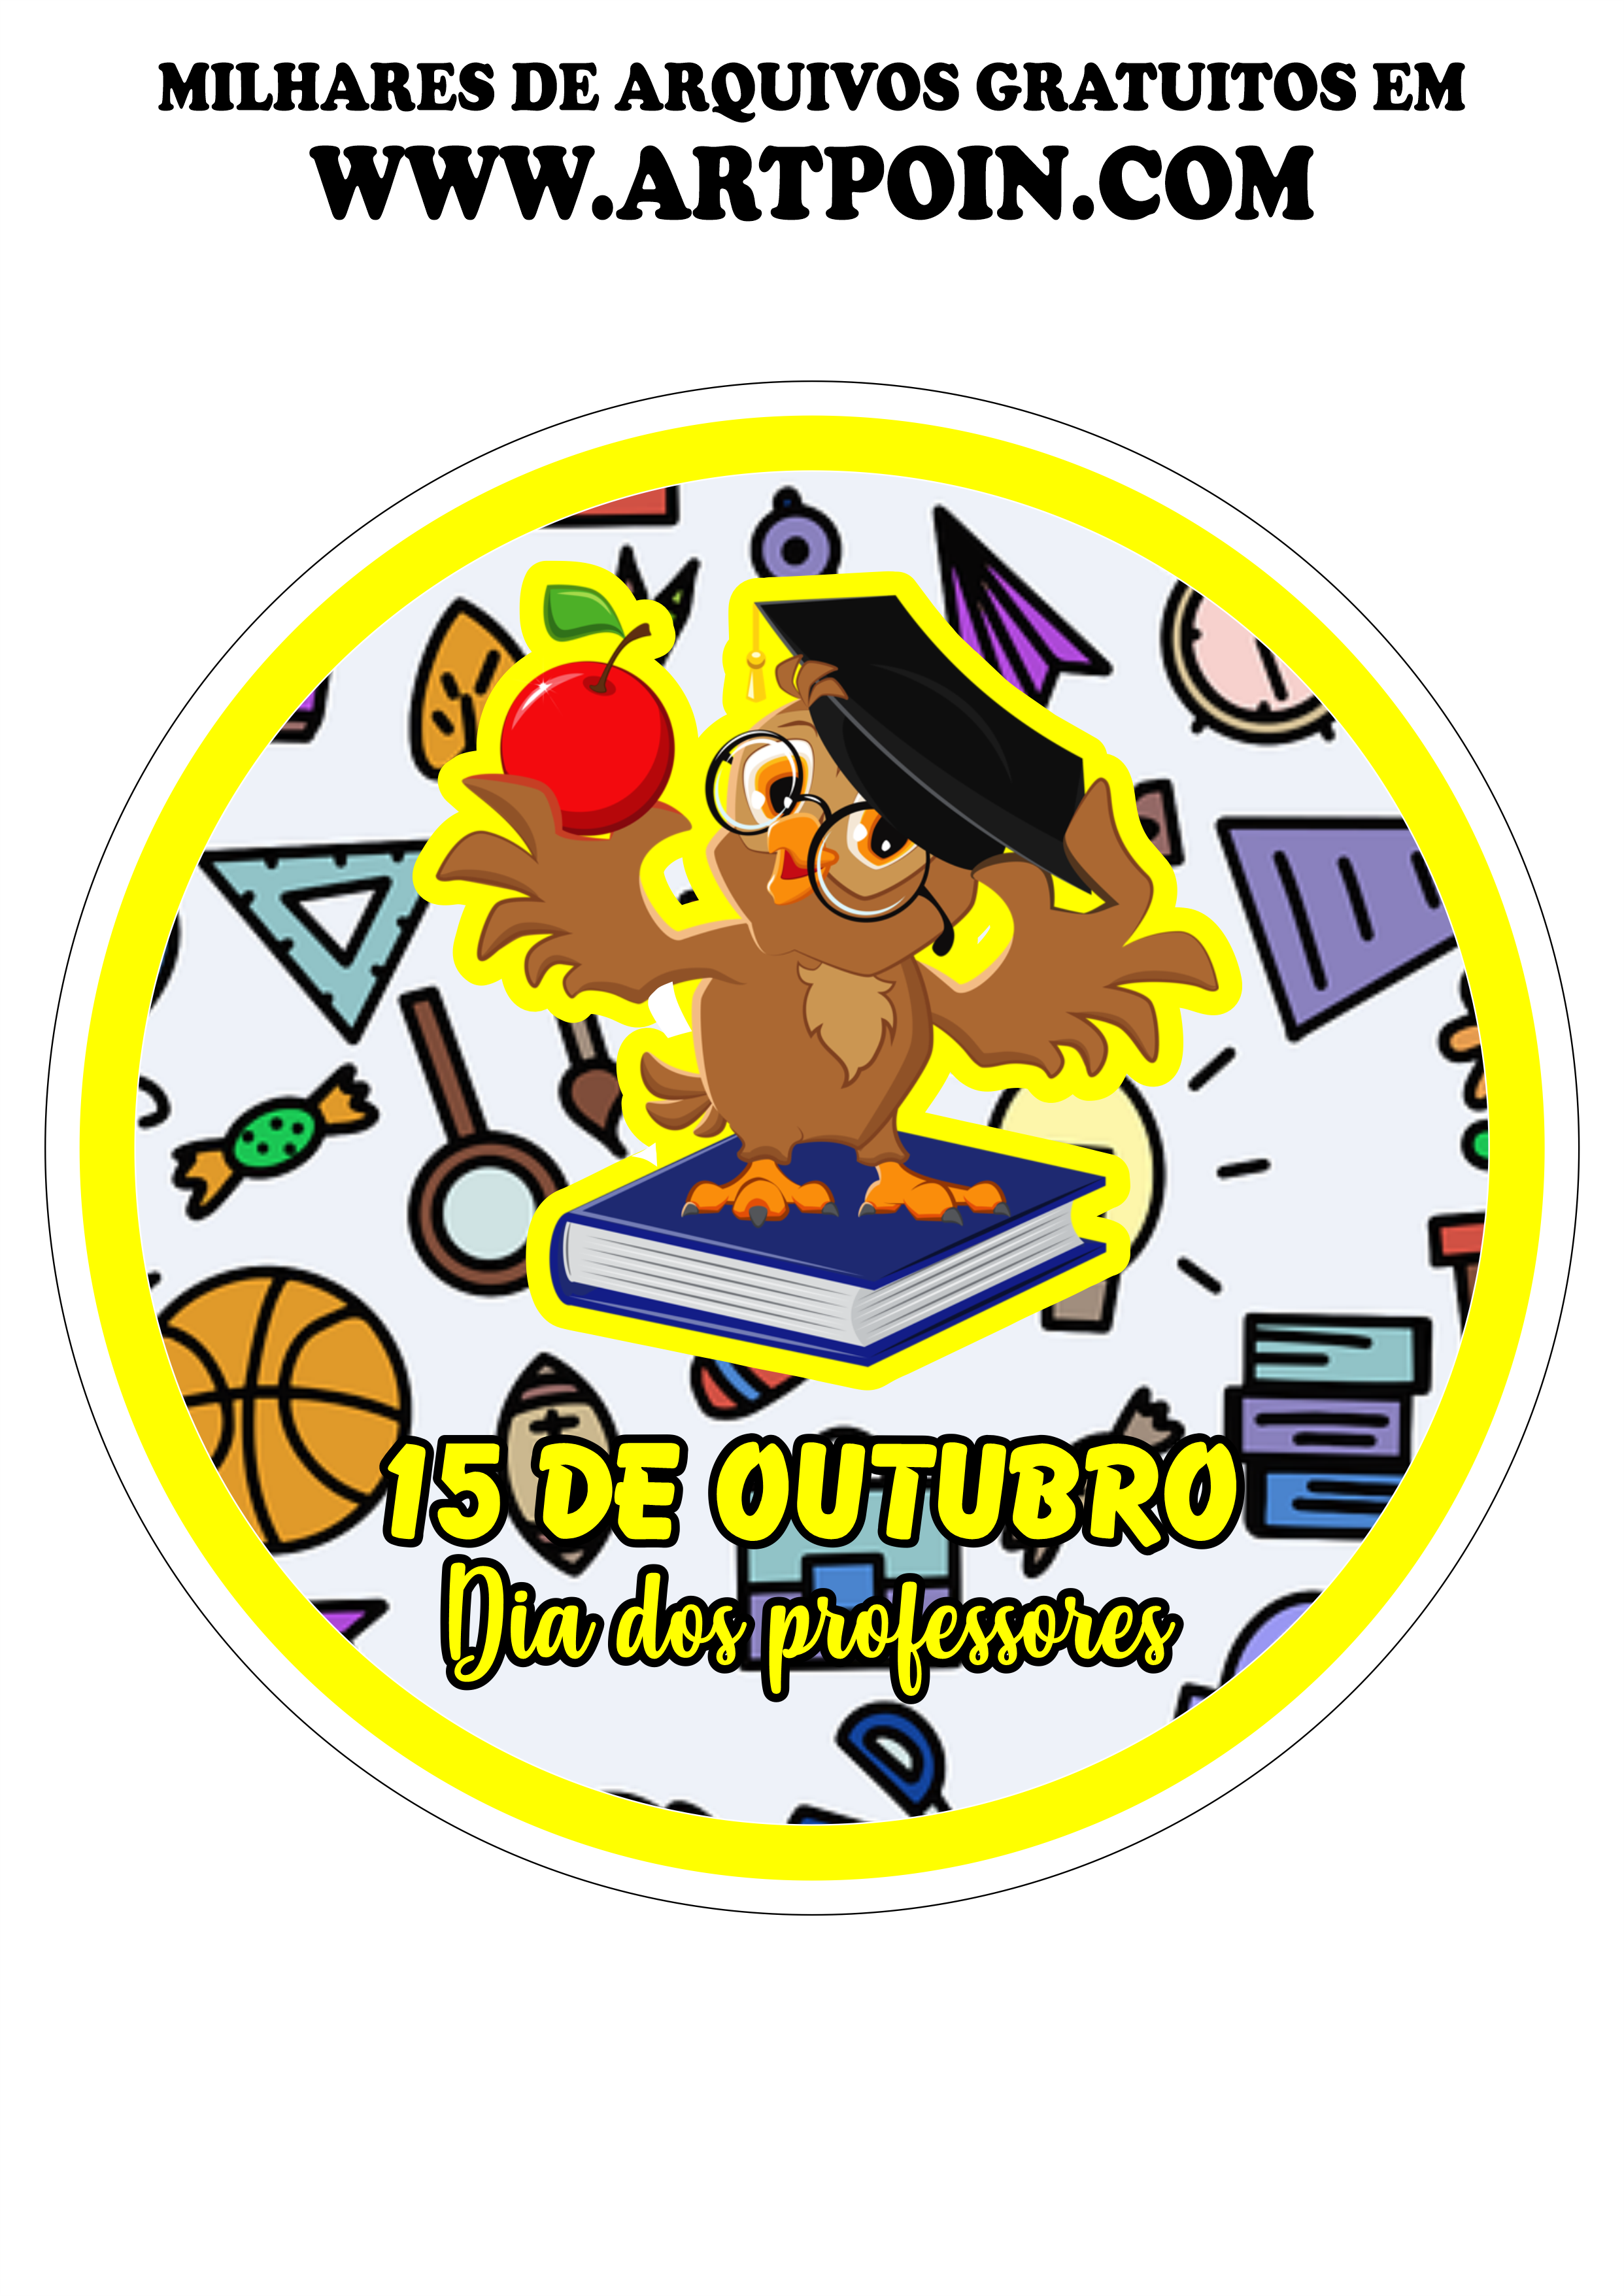 15 de outubro dia dos professores tags e etiquetas decorativas corujinha png